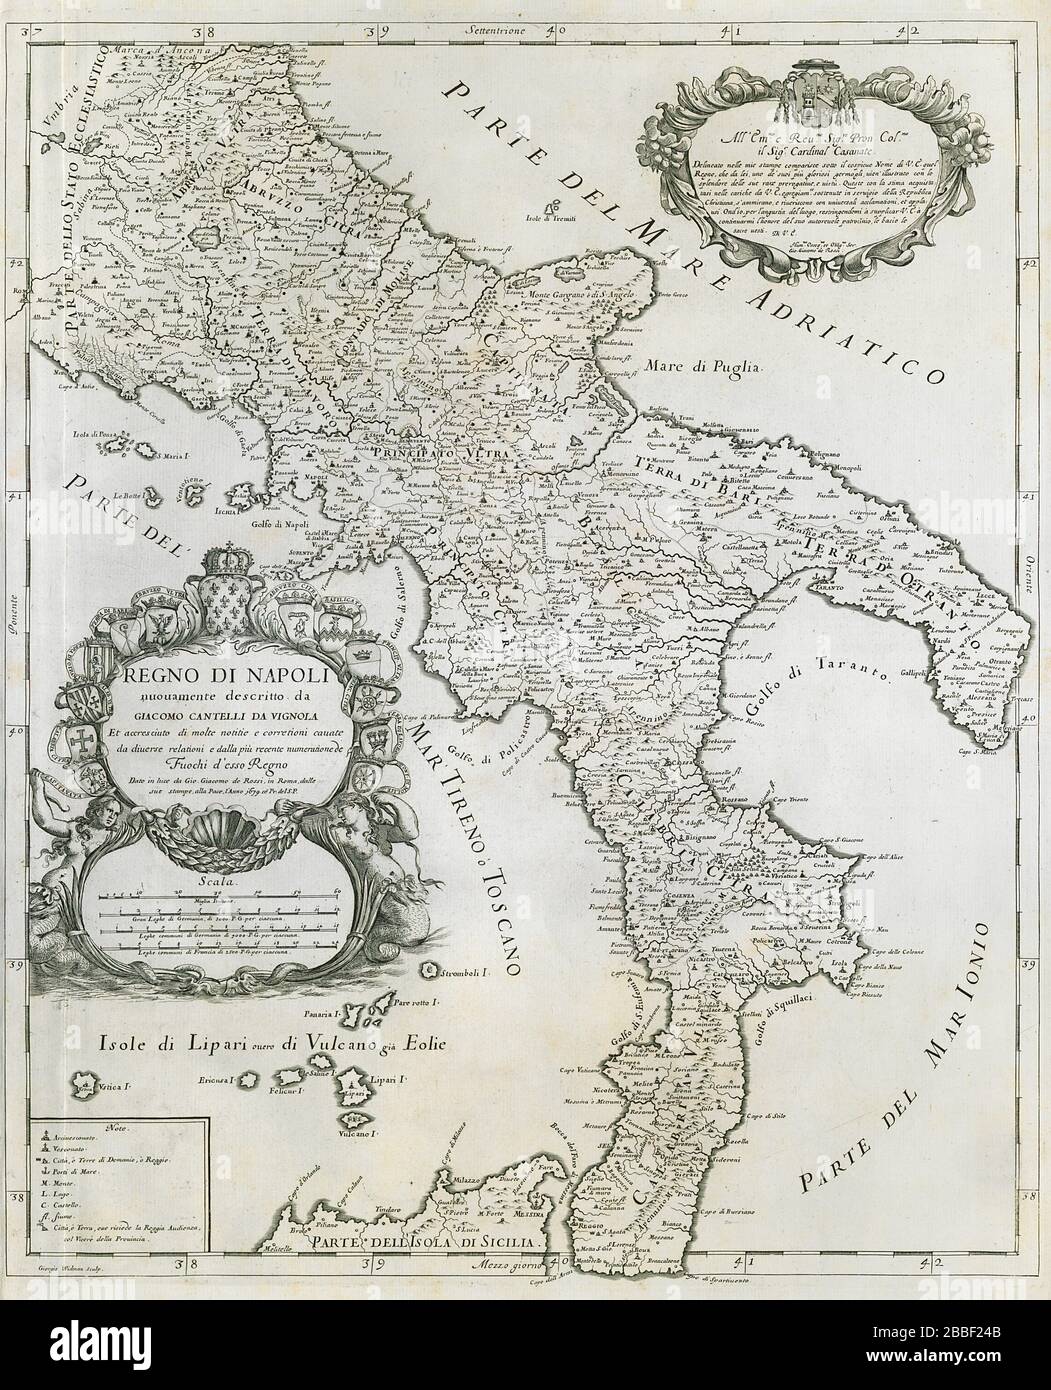 Regno di Napoli. Kingdom of Naples. Southern Italy. DE ROSSI / CANTELLI 1679 map Stock Photo